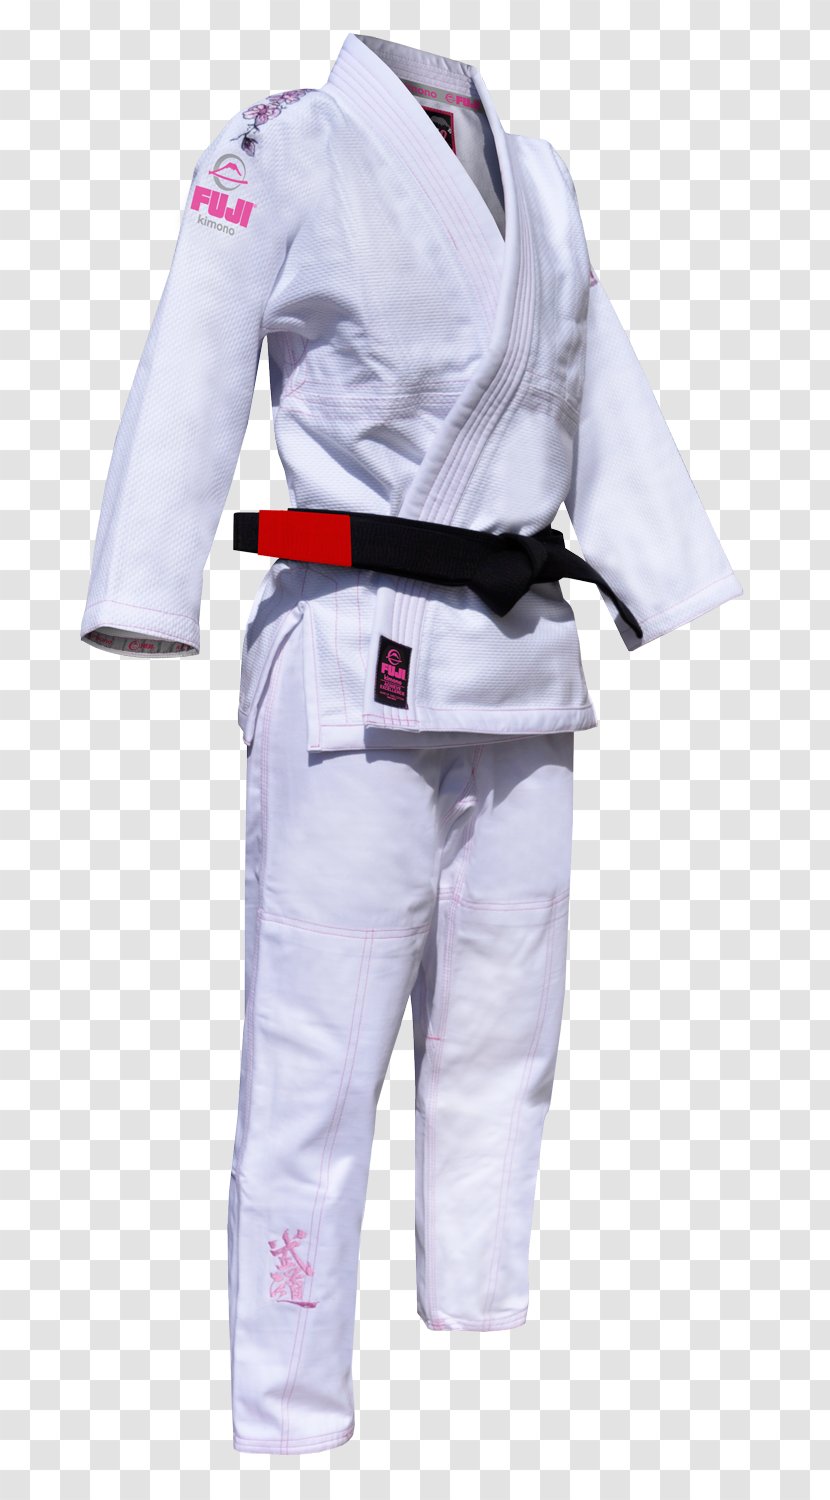 Brazilian Jiu-jitsu Gi Karate Jujutsu Dobok - Fuji Transparent PNG